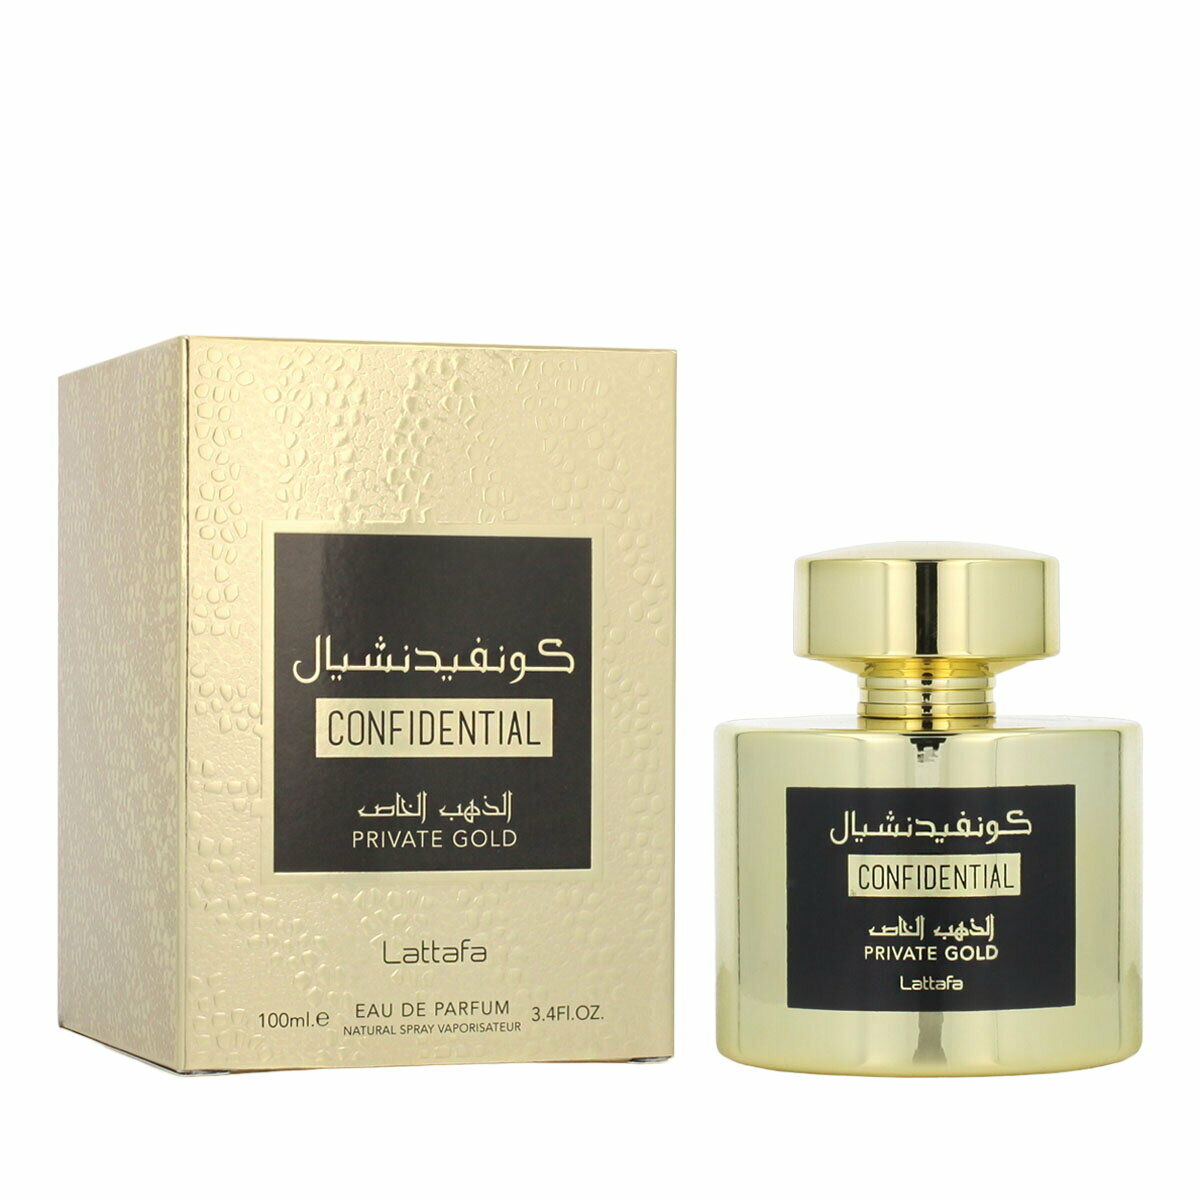 Parfum Mixte Lattafa EDP Confidential Private Gold 100 ml